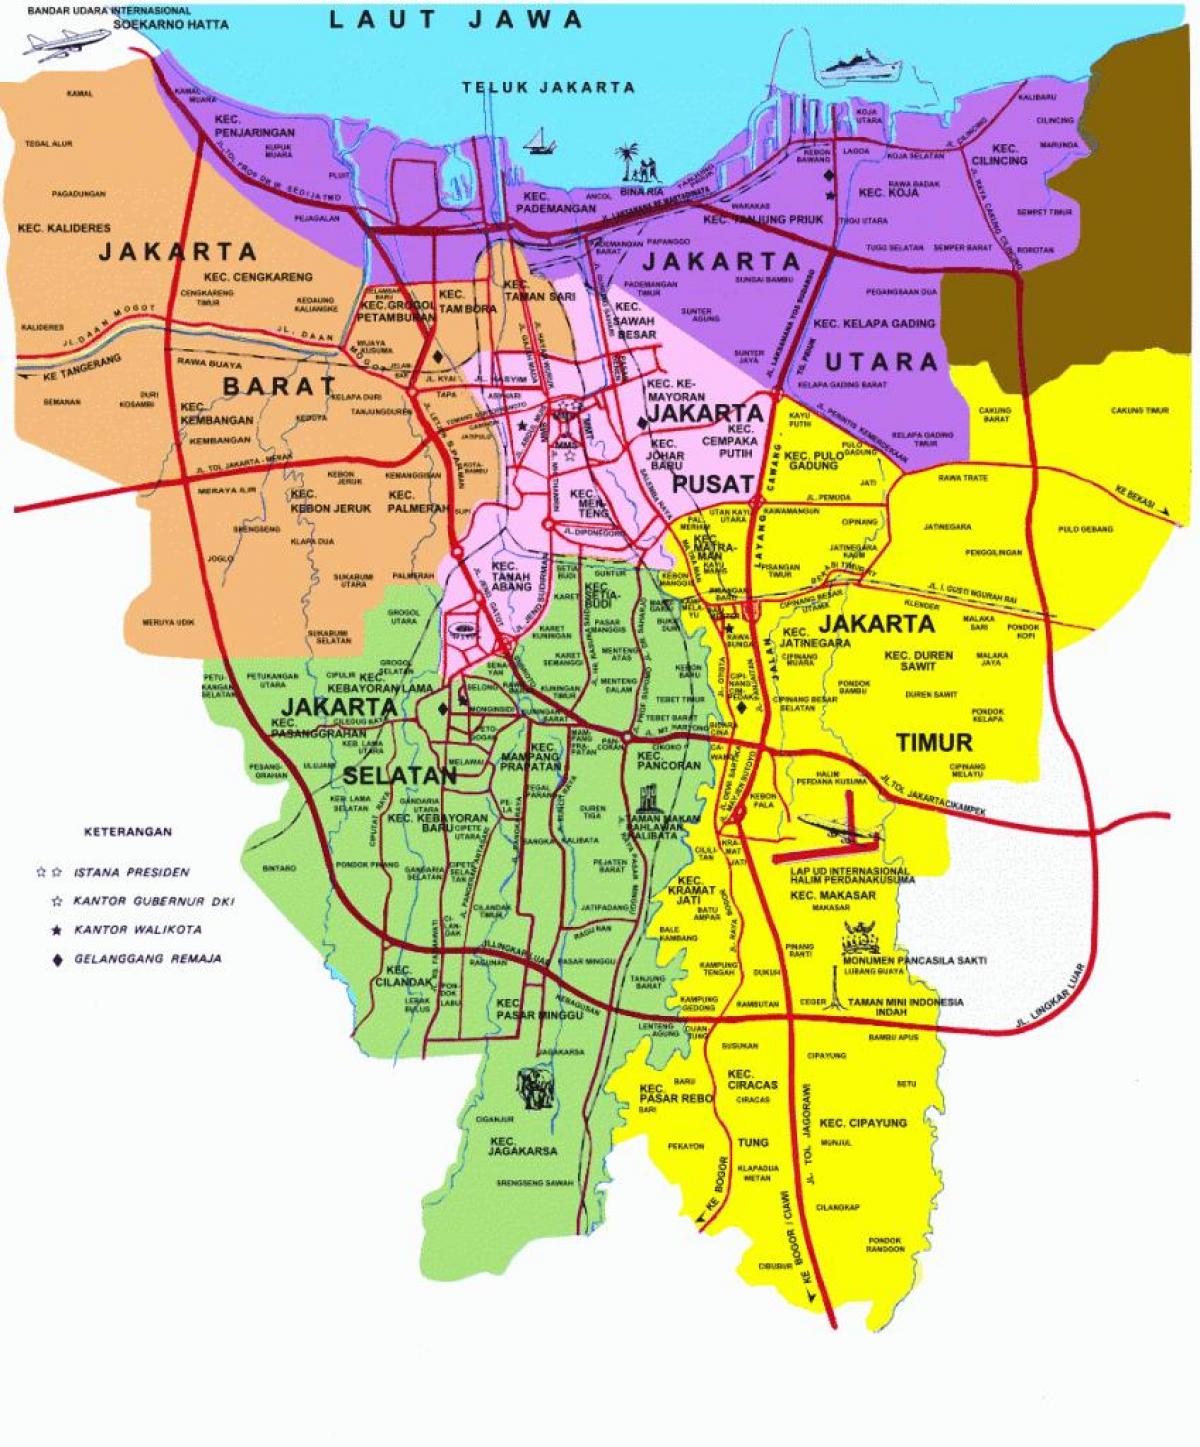 Jakarta haritası görülecek